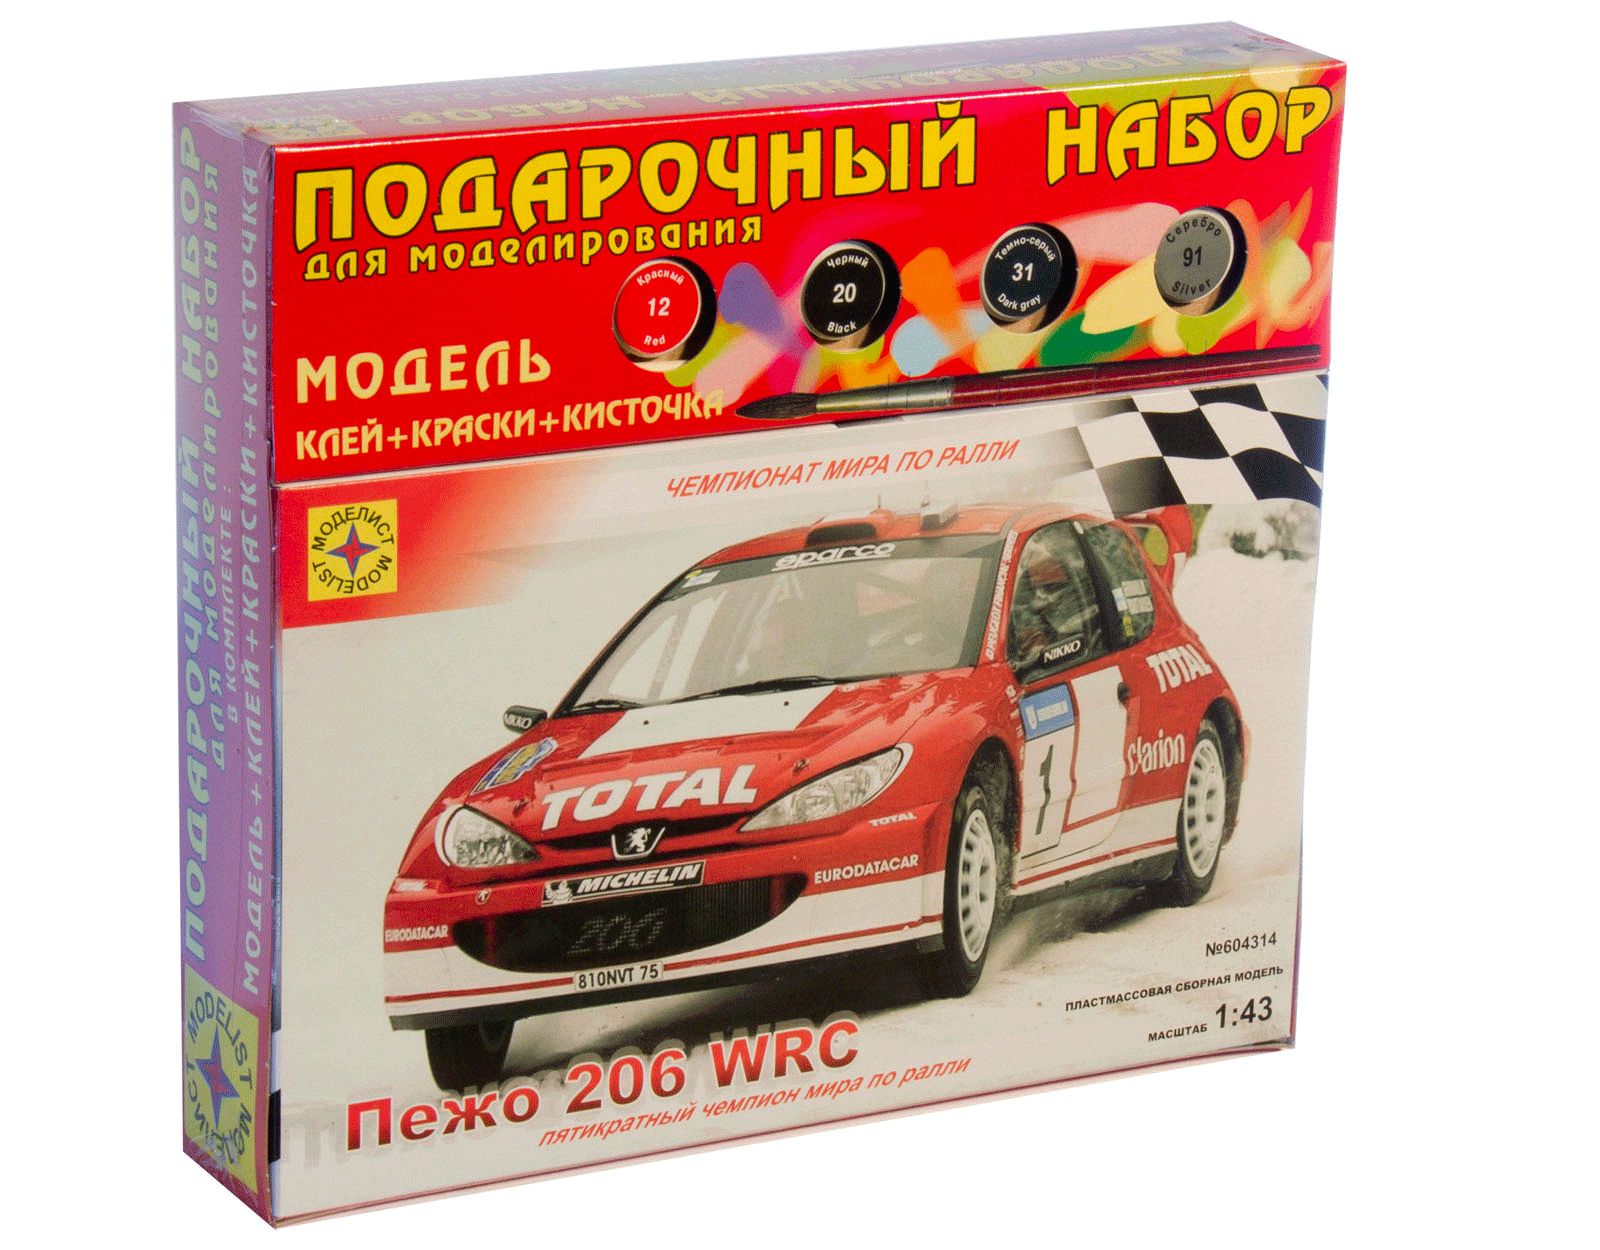 ПН604314  автомобиль  Пежо 206 WRC (1:43)